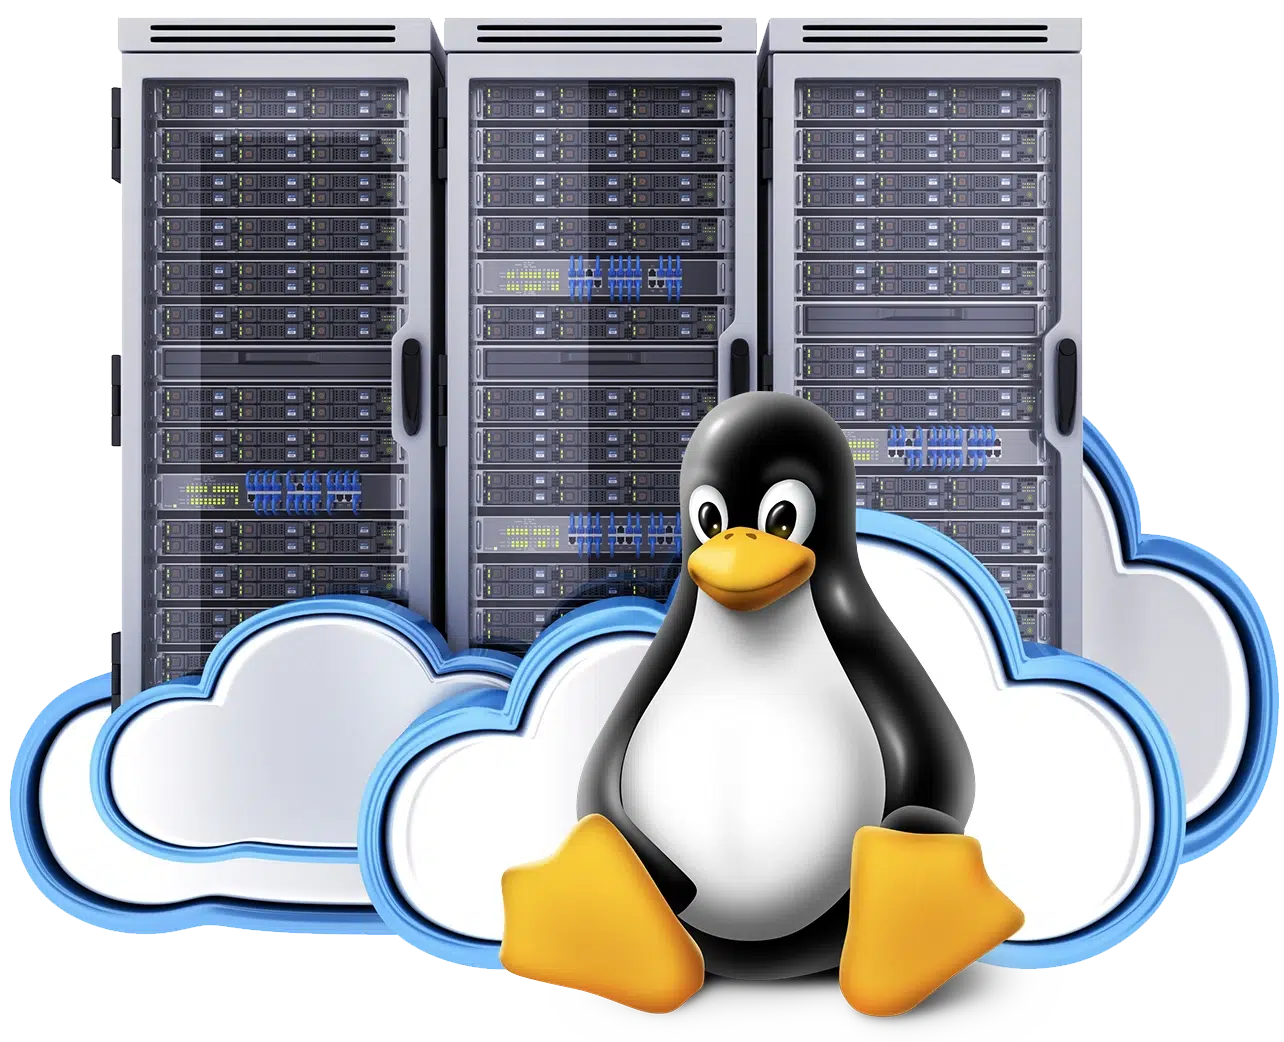 Imagen de un servidor web en un fondo con una nube azul y el logo de linux en primer plano, ilustrando un servidor dedicado linux.